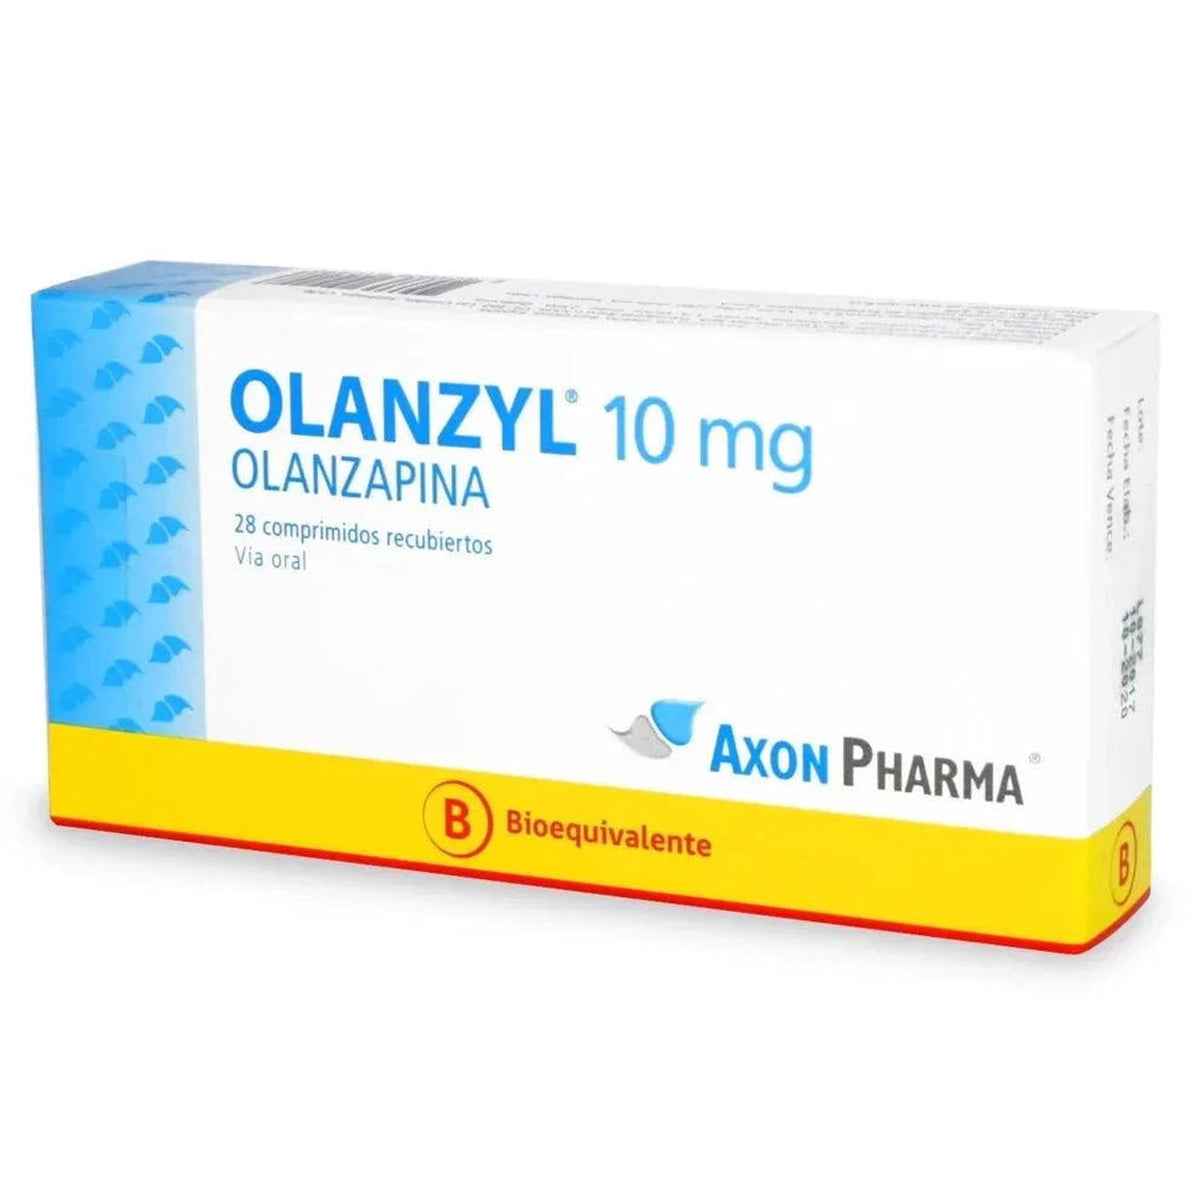 Olanzyl Comprimidos Recubiertos 10mg